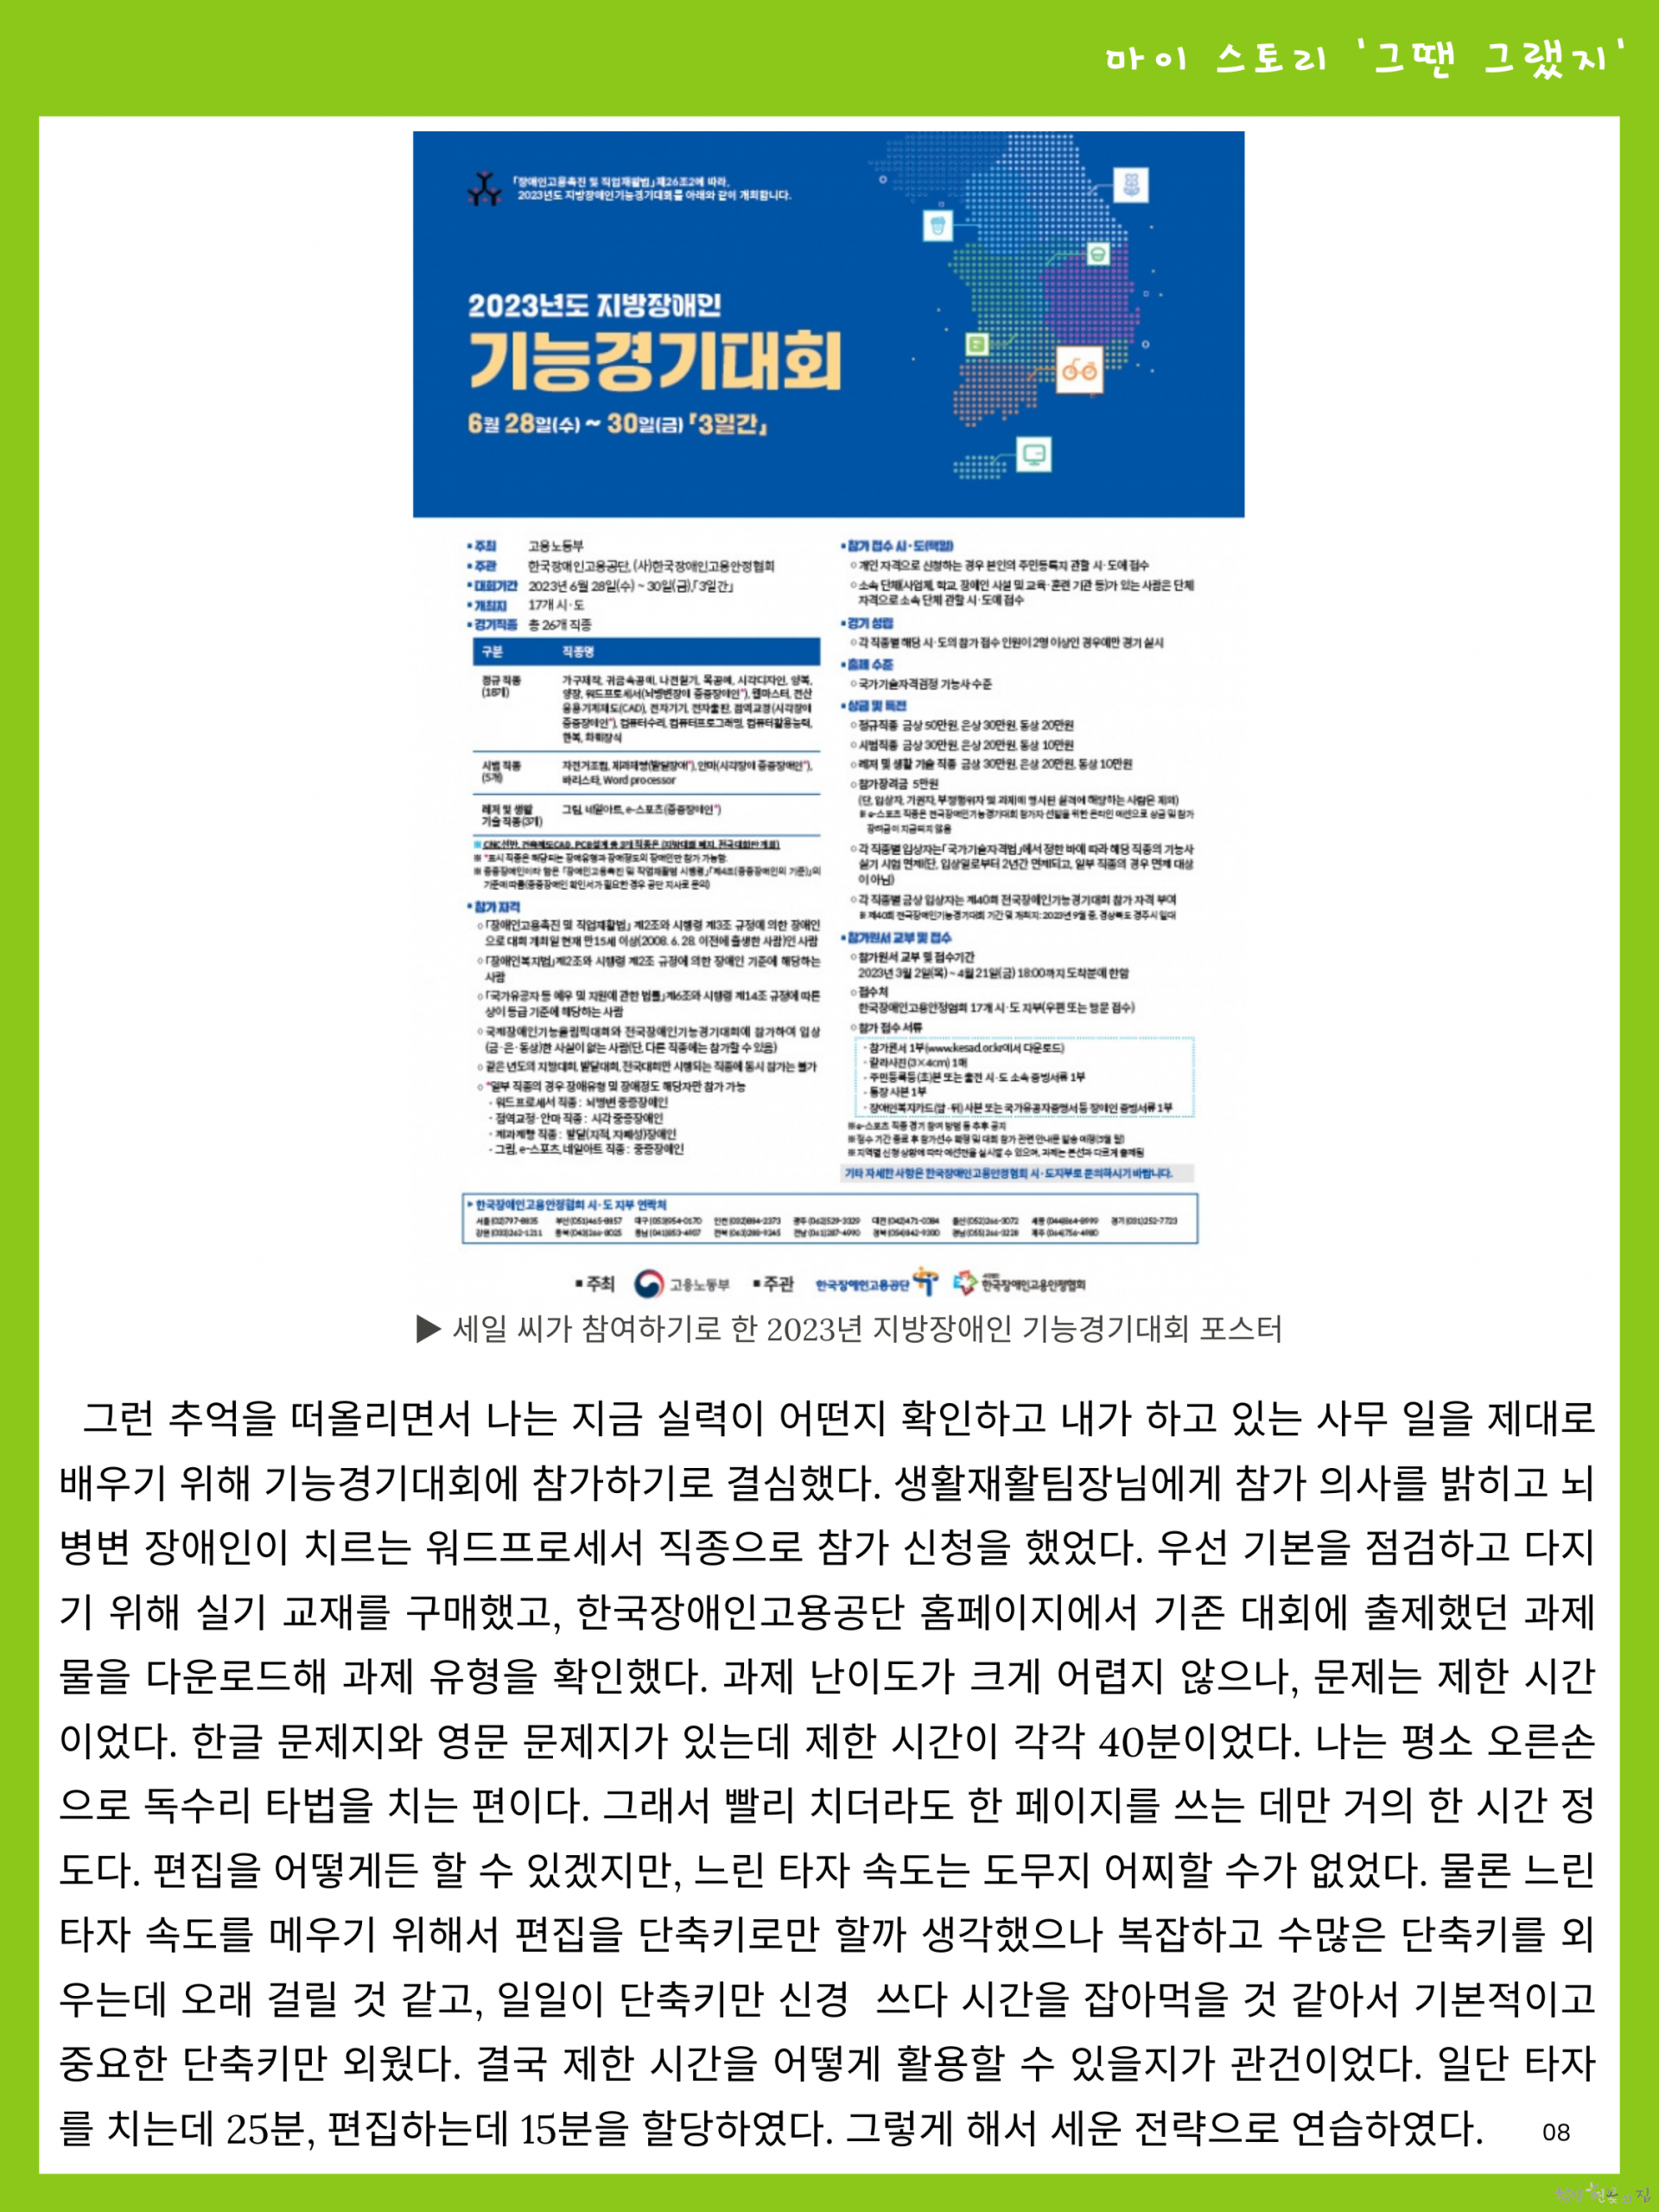 08.식구 수필 마이 스토리 - 박세일 씨의 기능경기대회 이야기 03.png